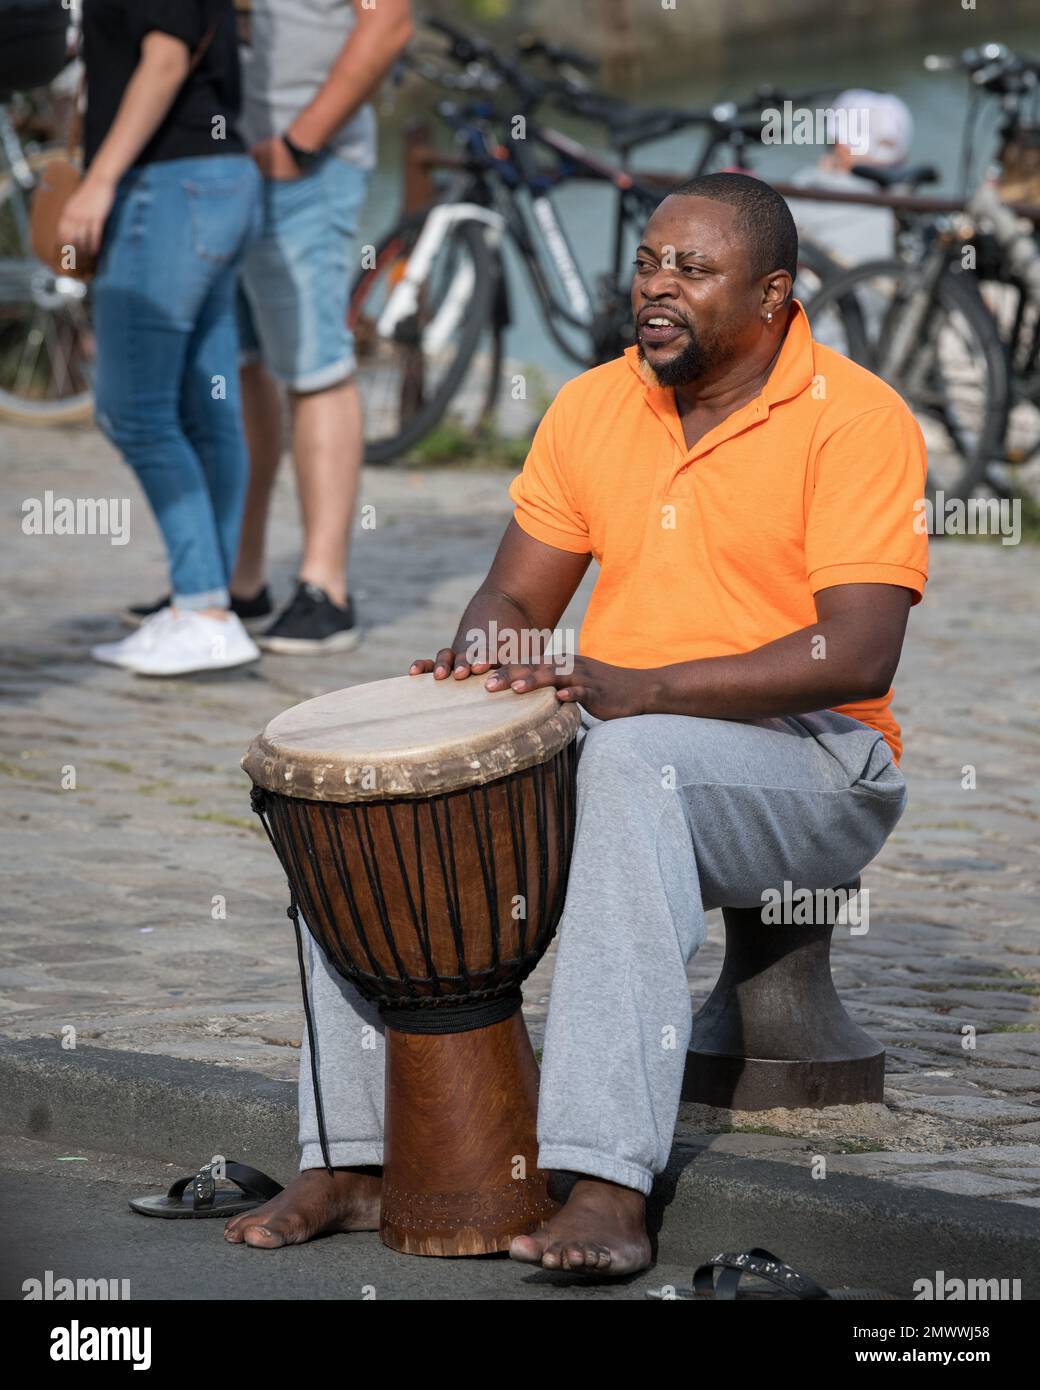 Traditional djembe band Banque de photographies et d'images à haute  résolution - Alamy